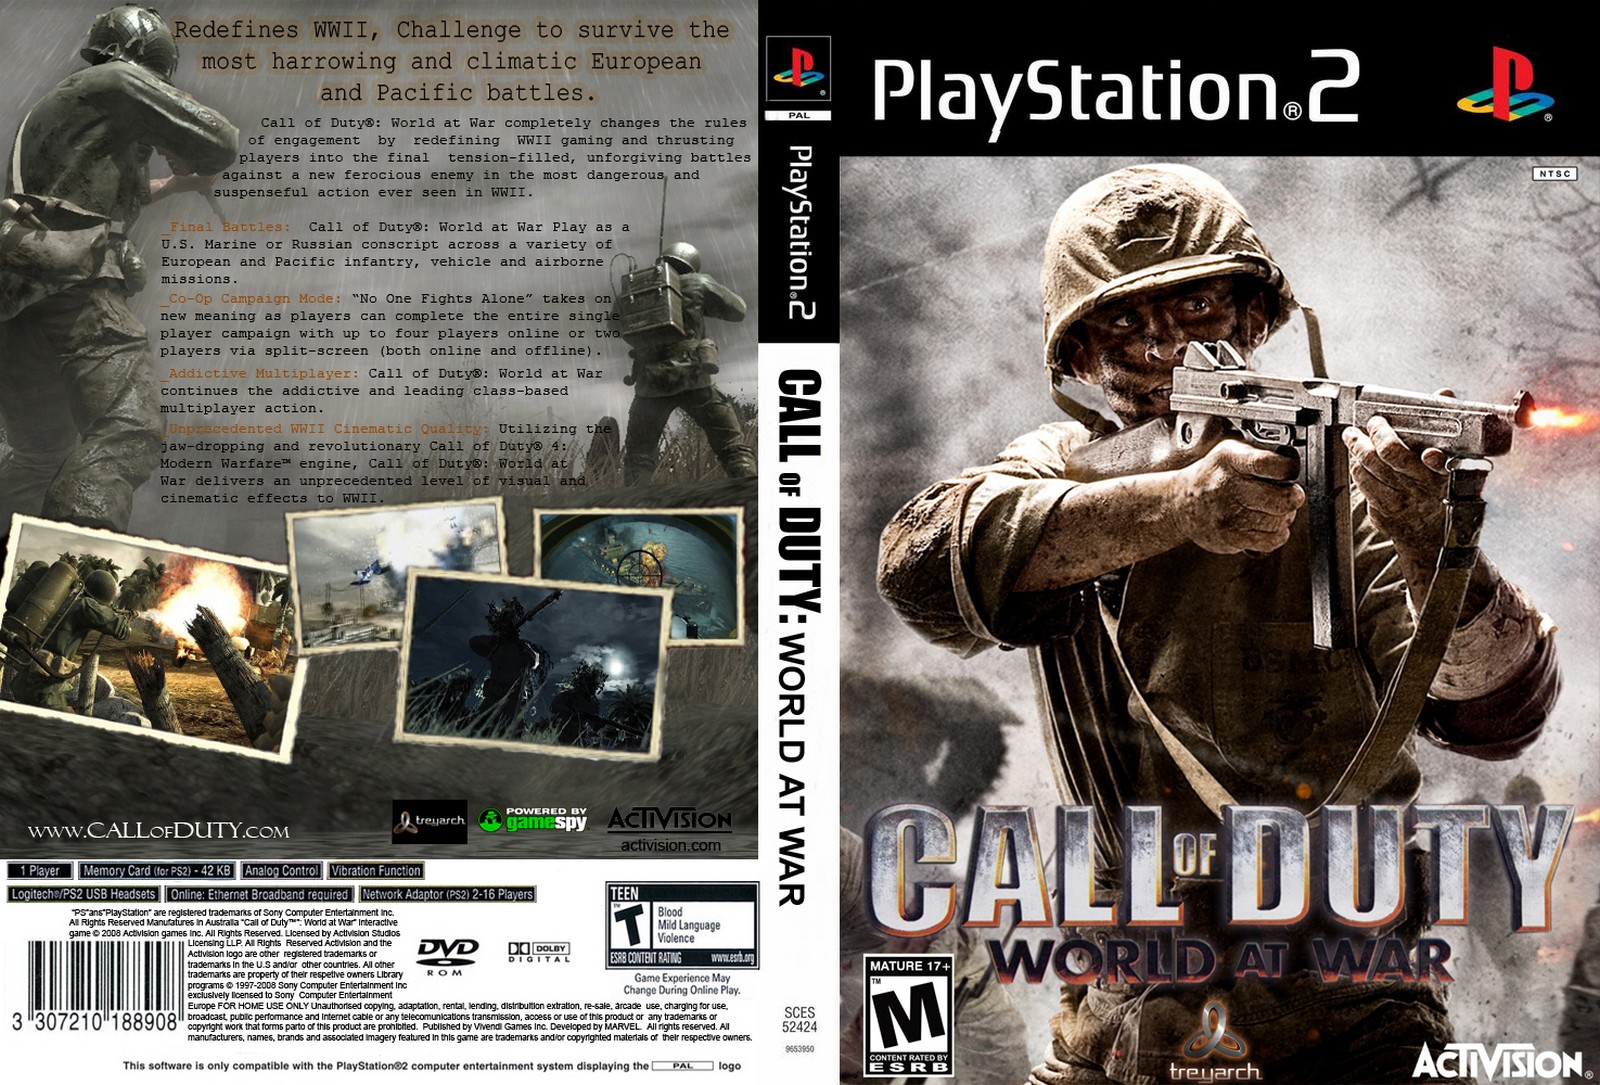 Call of Duty: World at War Seminovo - PS2 - Stop Games - A loja de games  mais completa de BH!